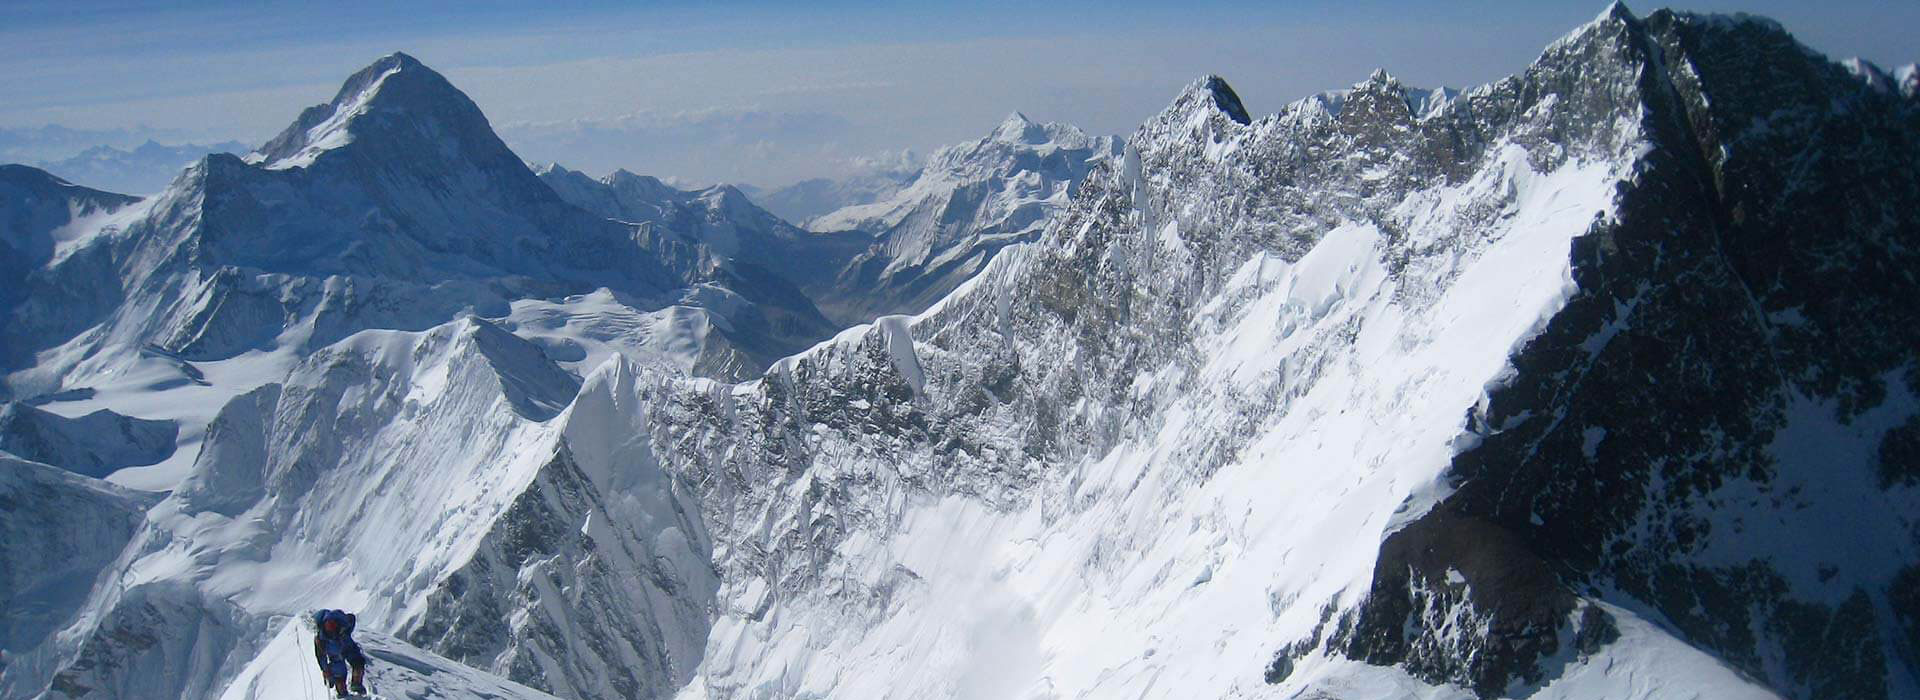 Lhotse Peak Expedition – 57 days